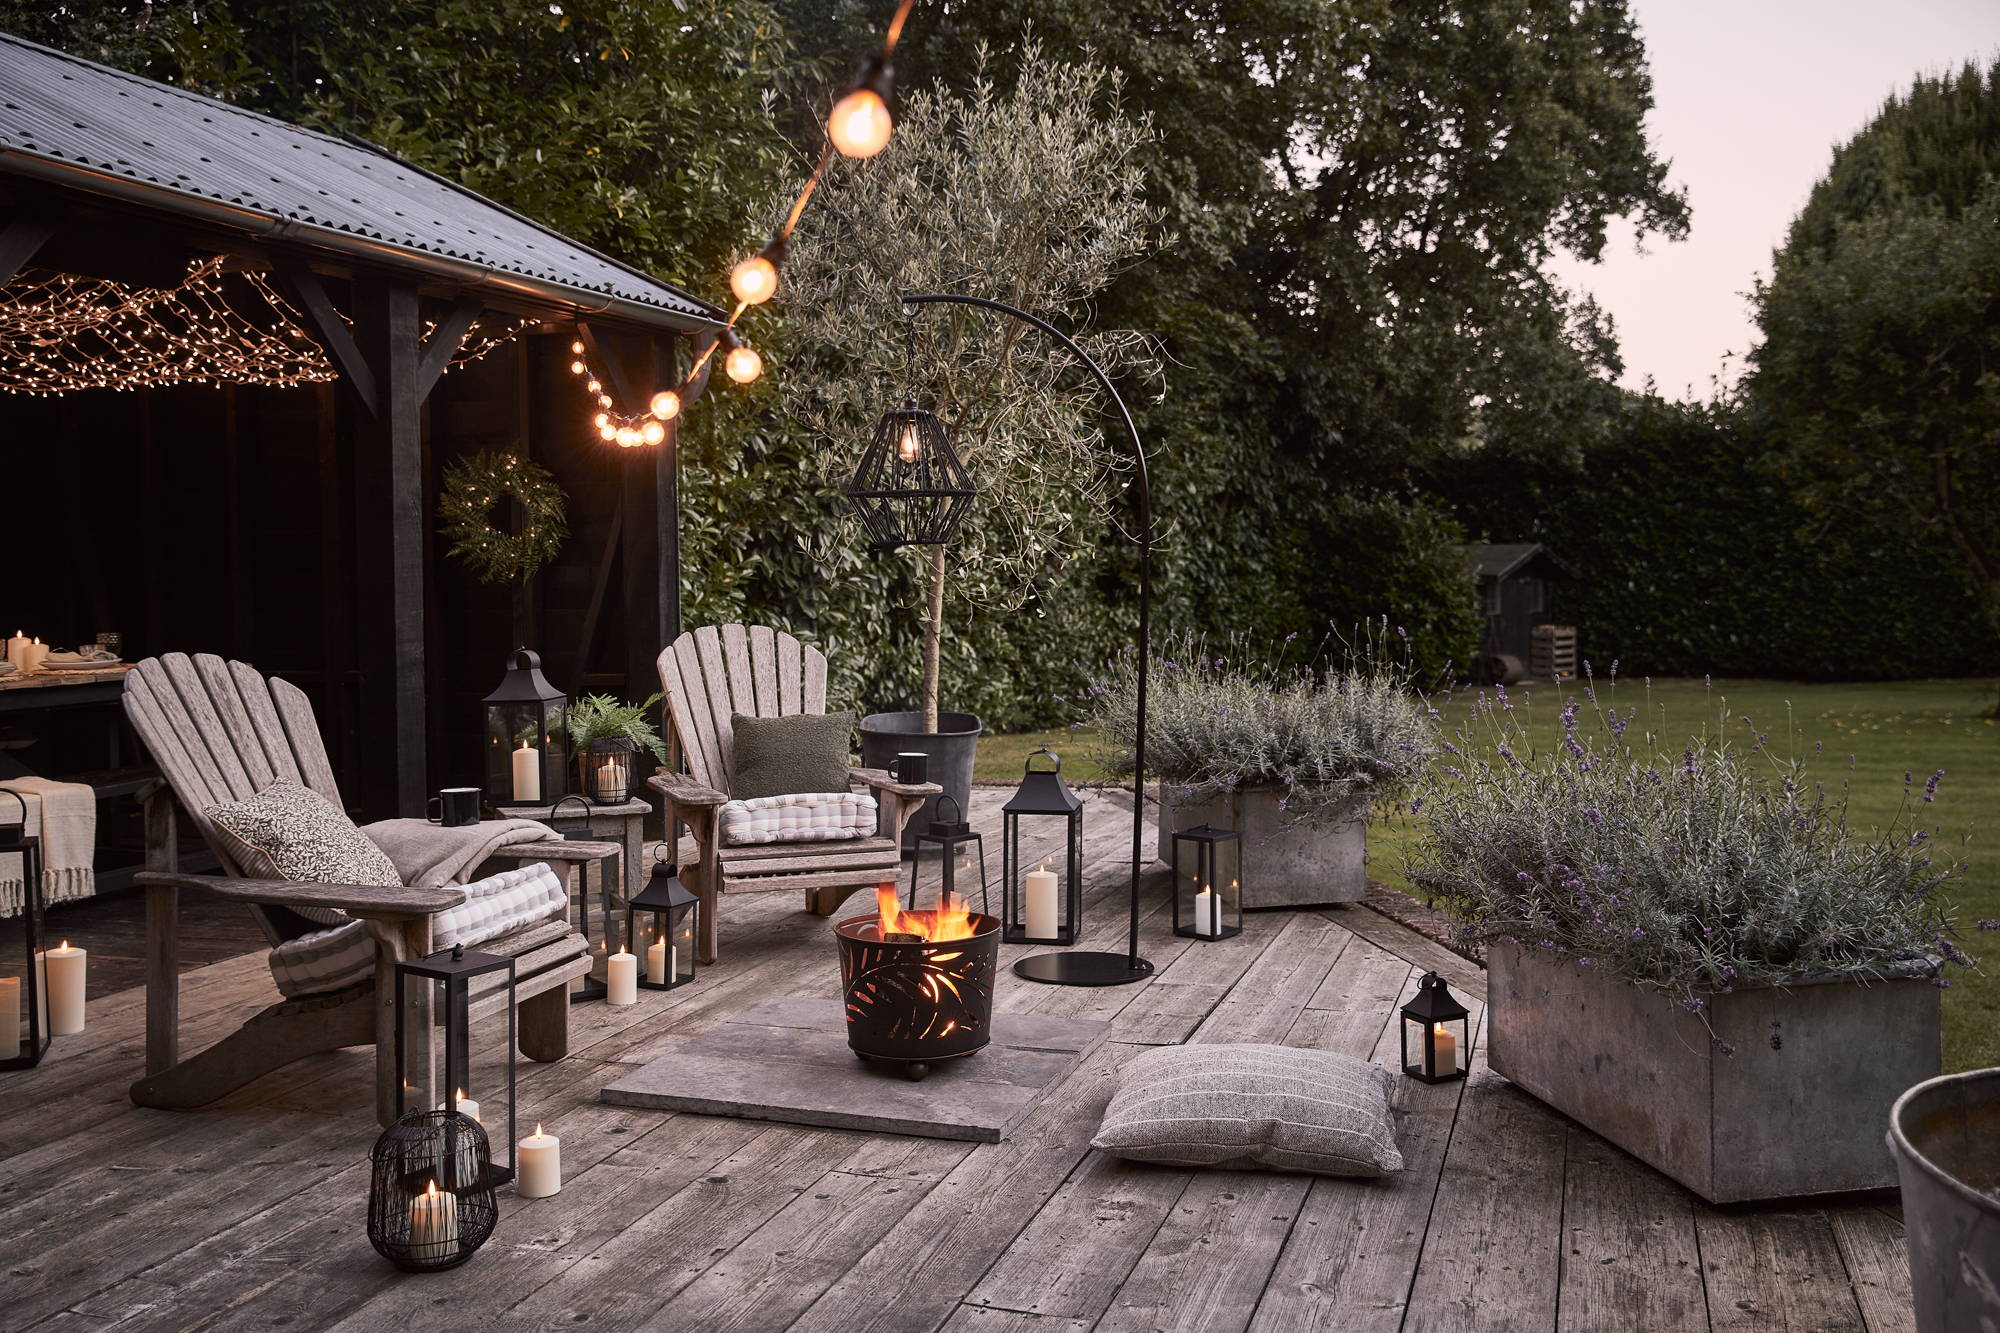 Un coin salon d'été extérieur avec des bougies et des lanternes LED, un coin brasero et des guirlandes guinguettes blanc chaud suspendues en hauteur.